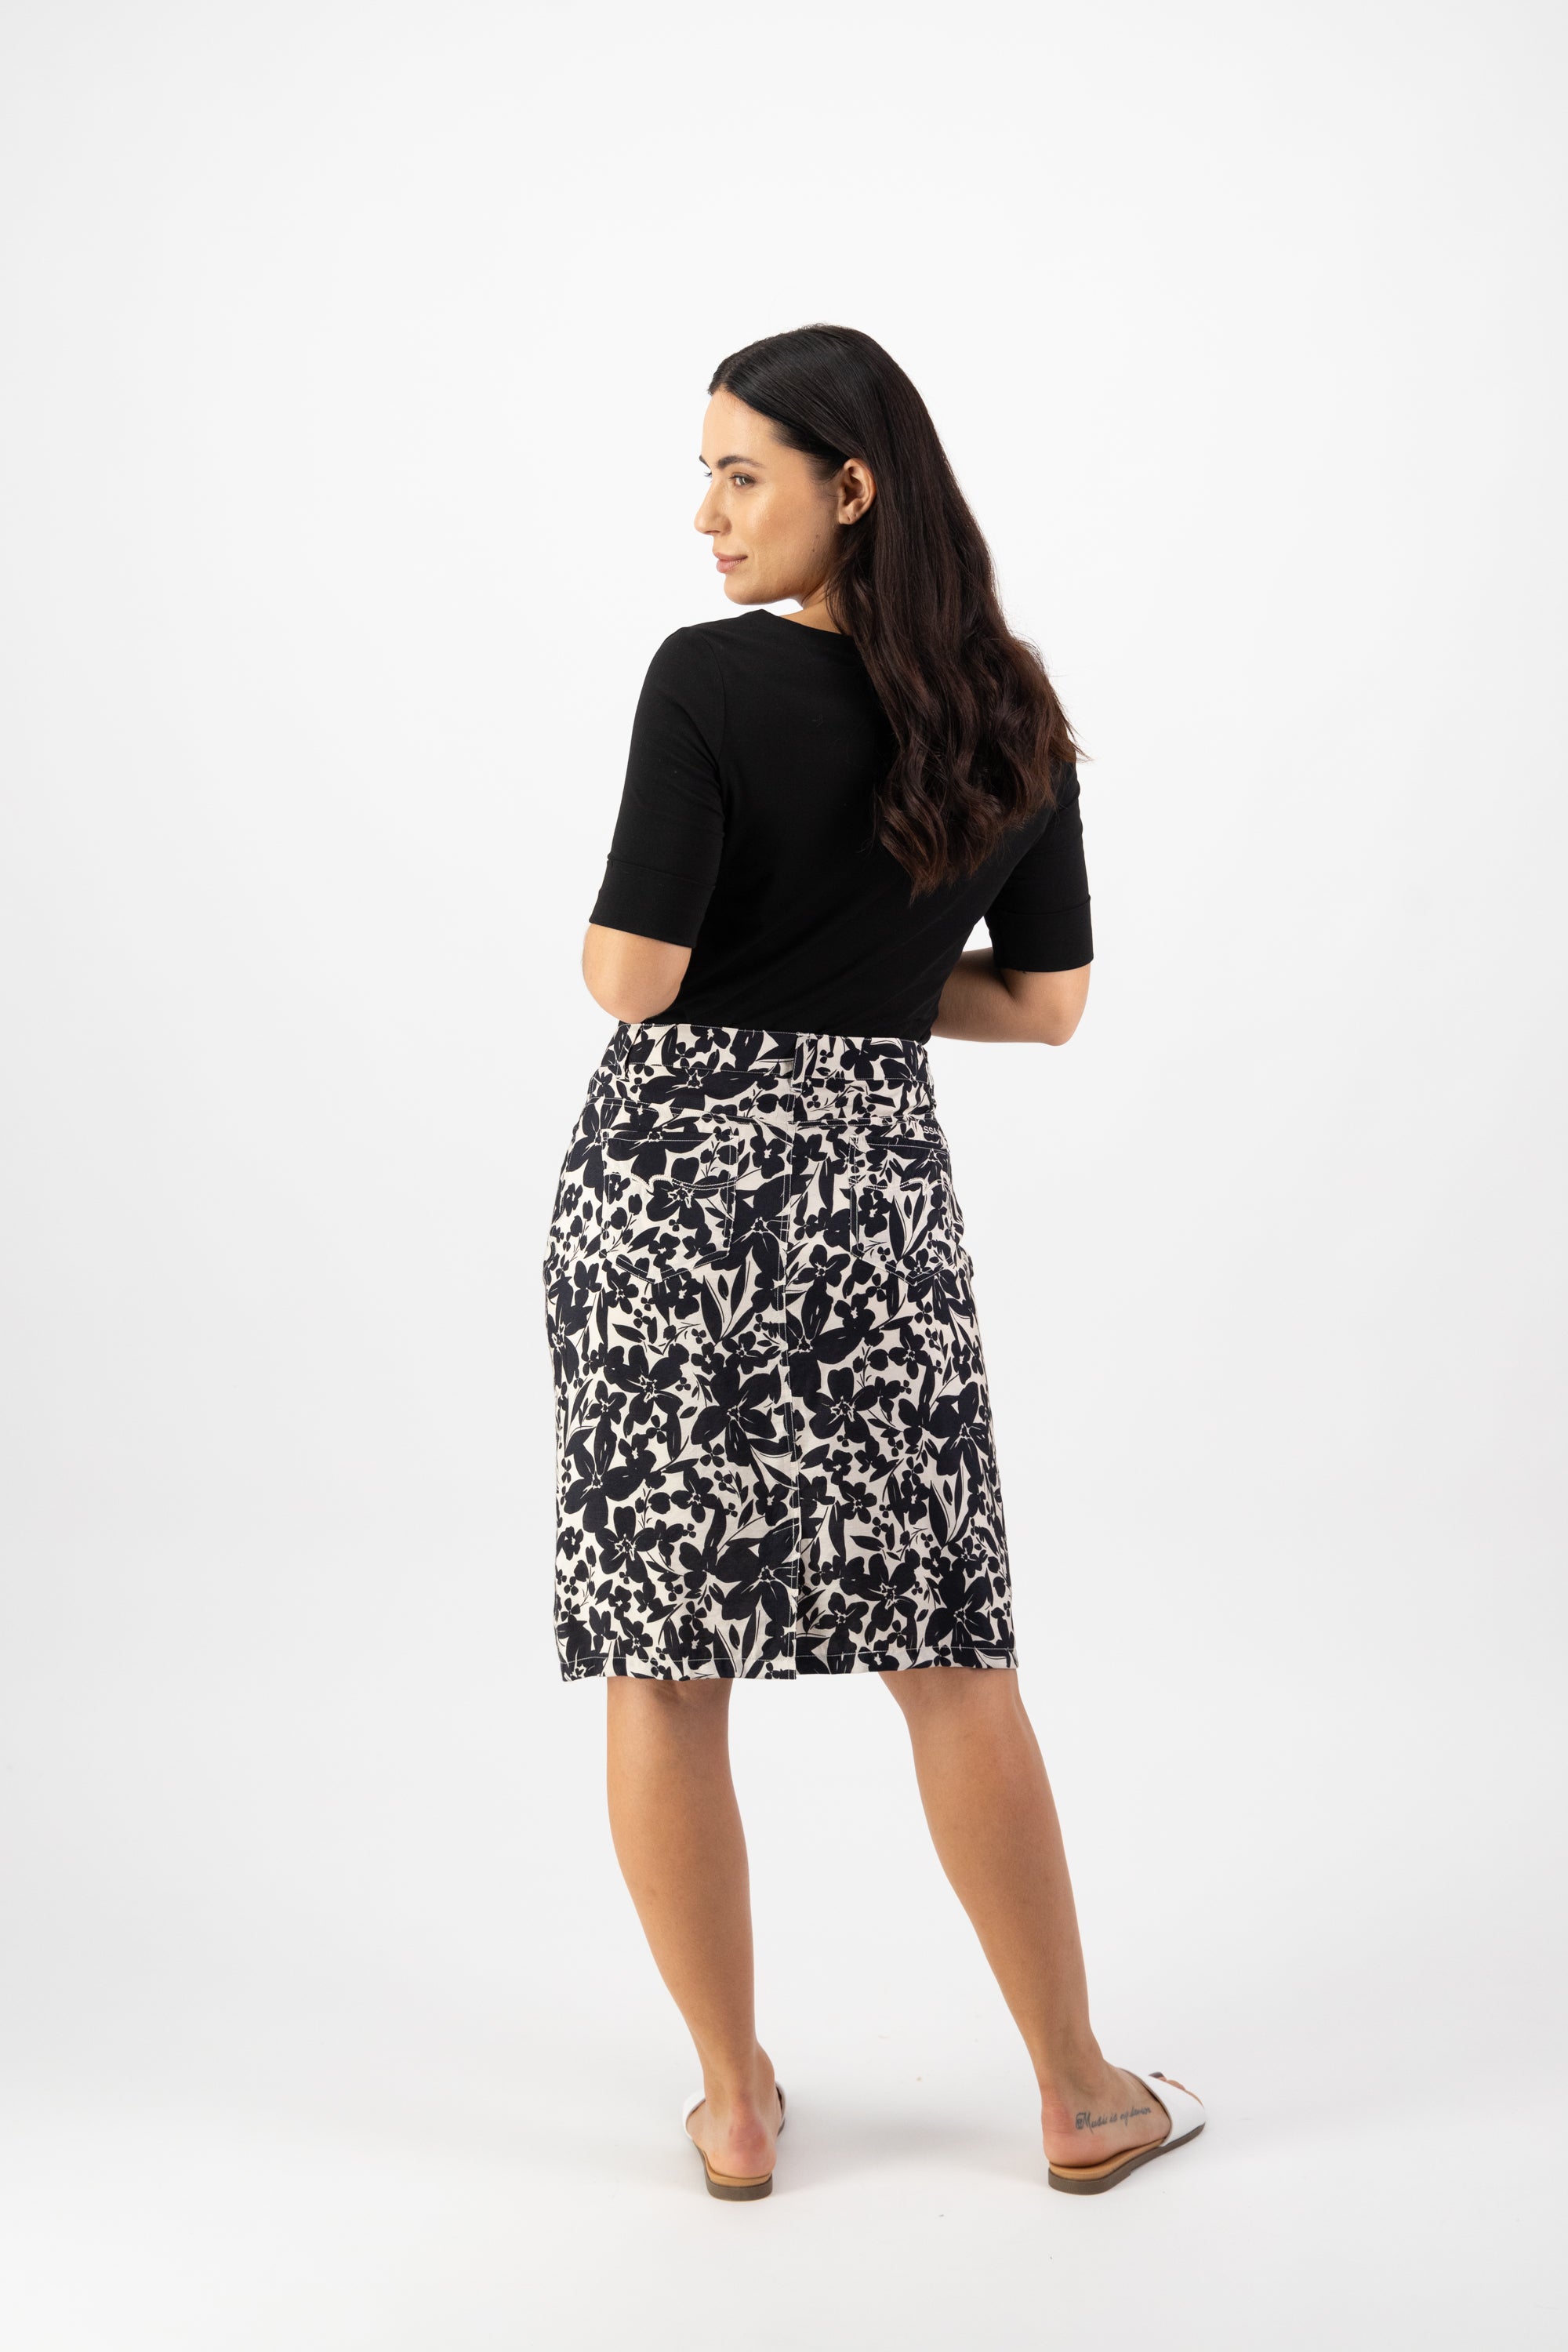 Vassalli Knee Length Skirt - Manhattan